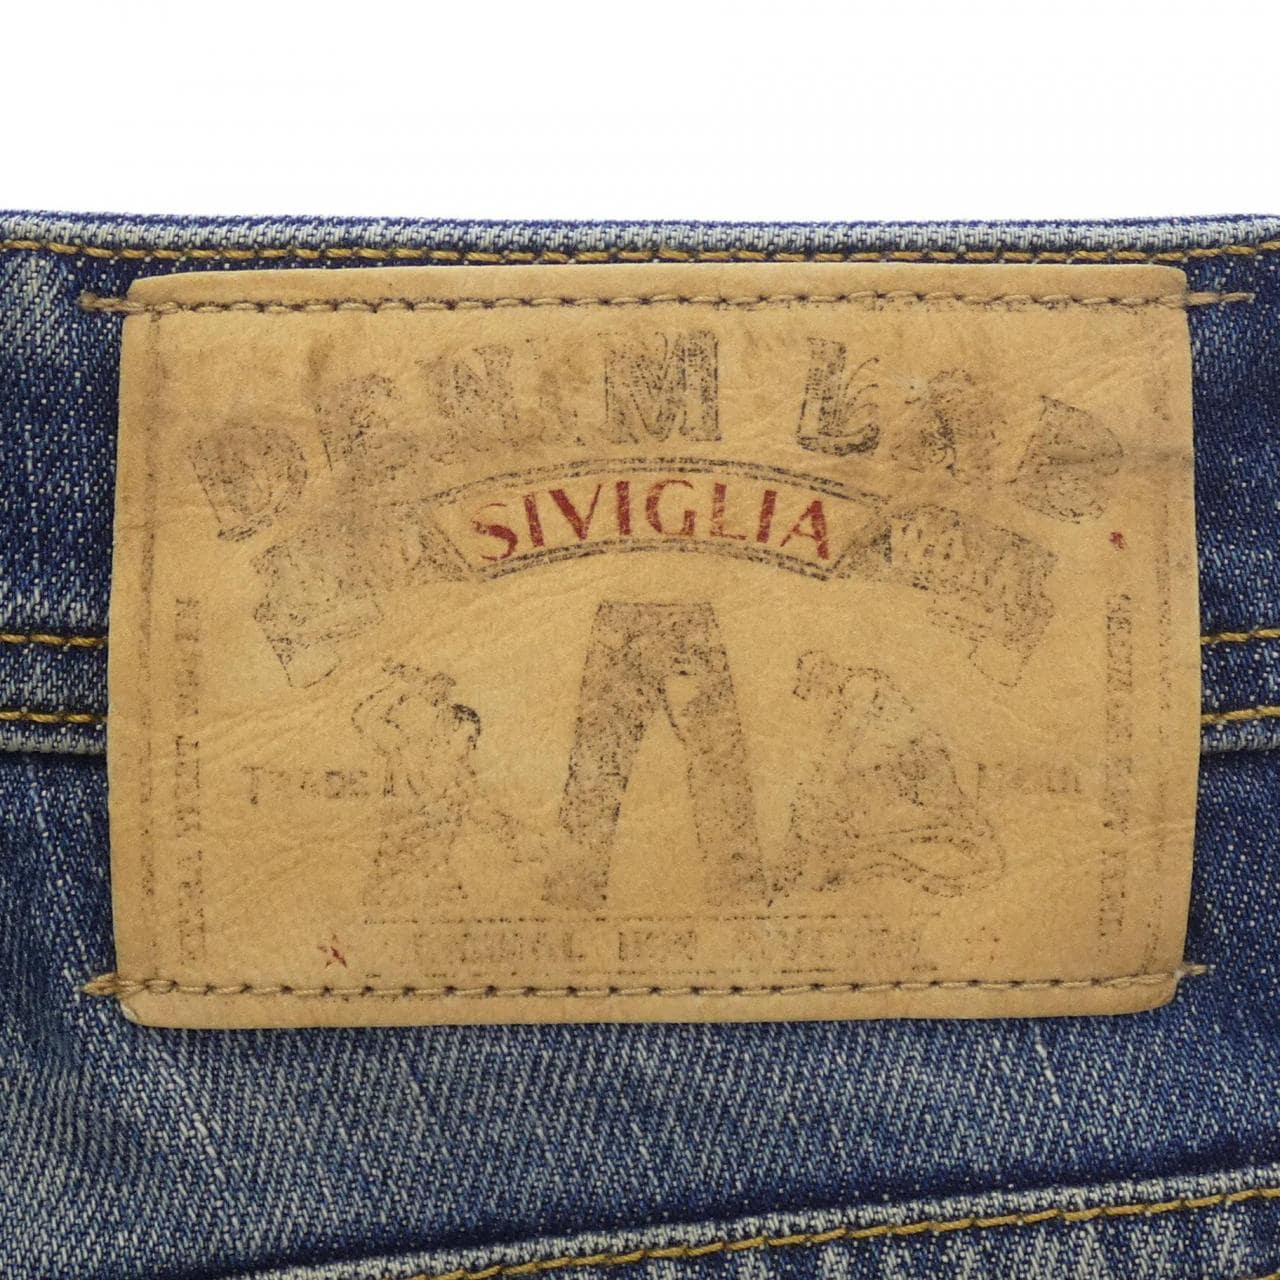 SIVIGLIA jeans